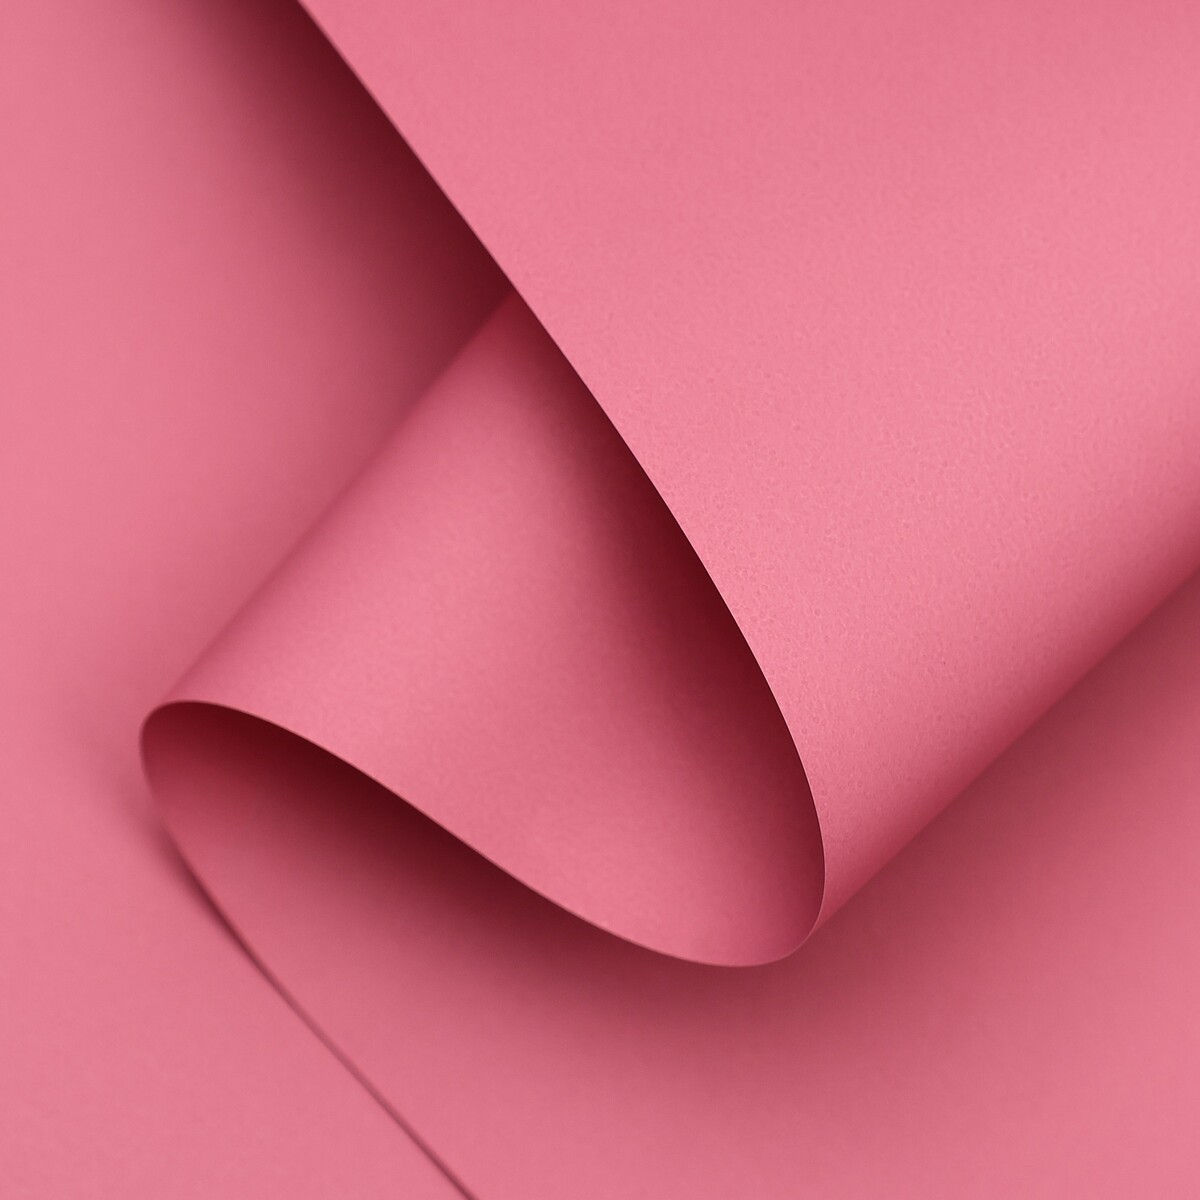 Пленка матовая 0,5 x 10 м 65 мкм, пастельная серия, лиловый пленка матовая двухсторонняя пастельная серия 65 мкм пастельный розовый 0 5 x 10 м